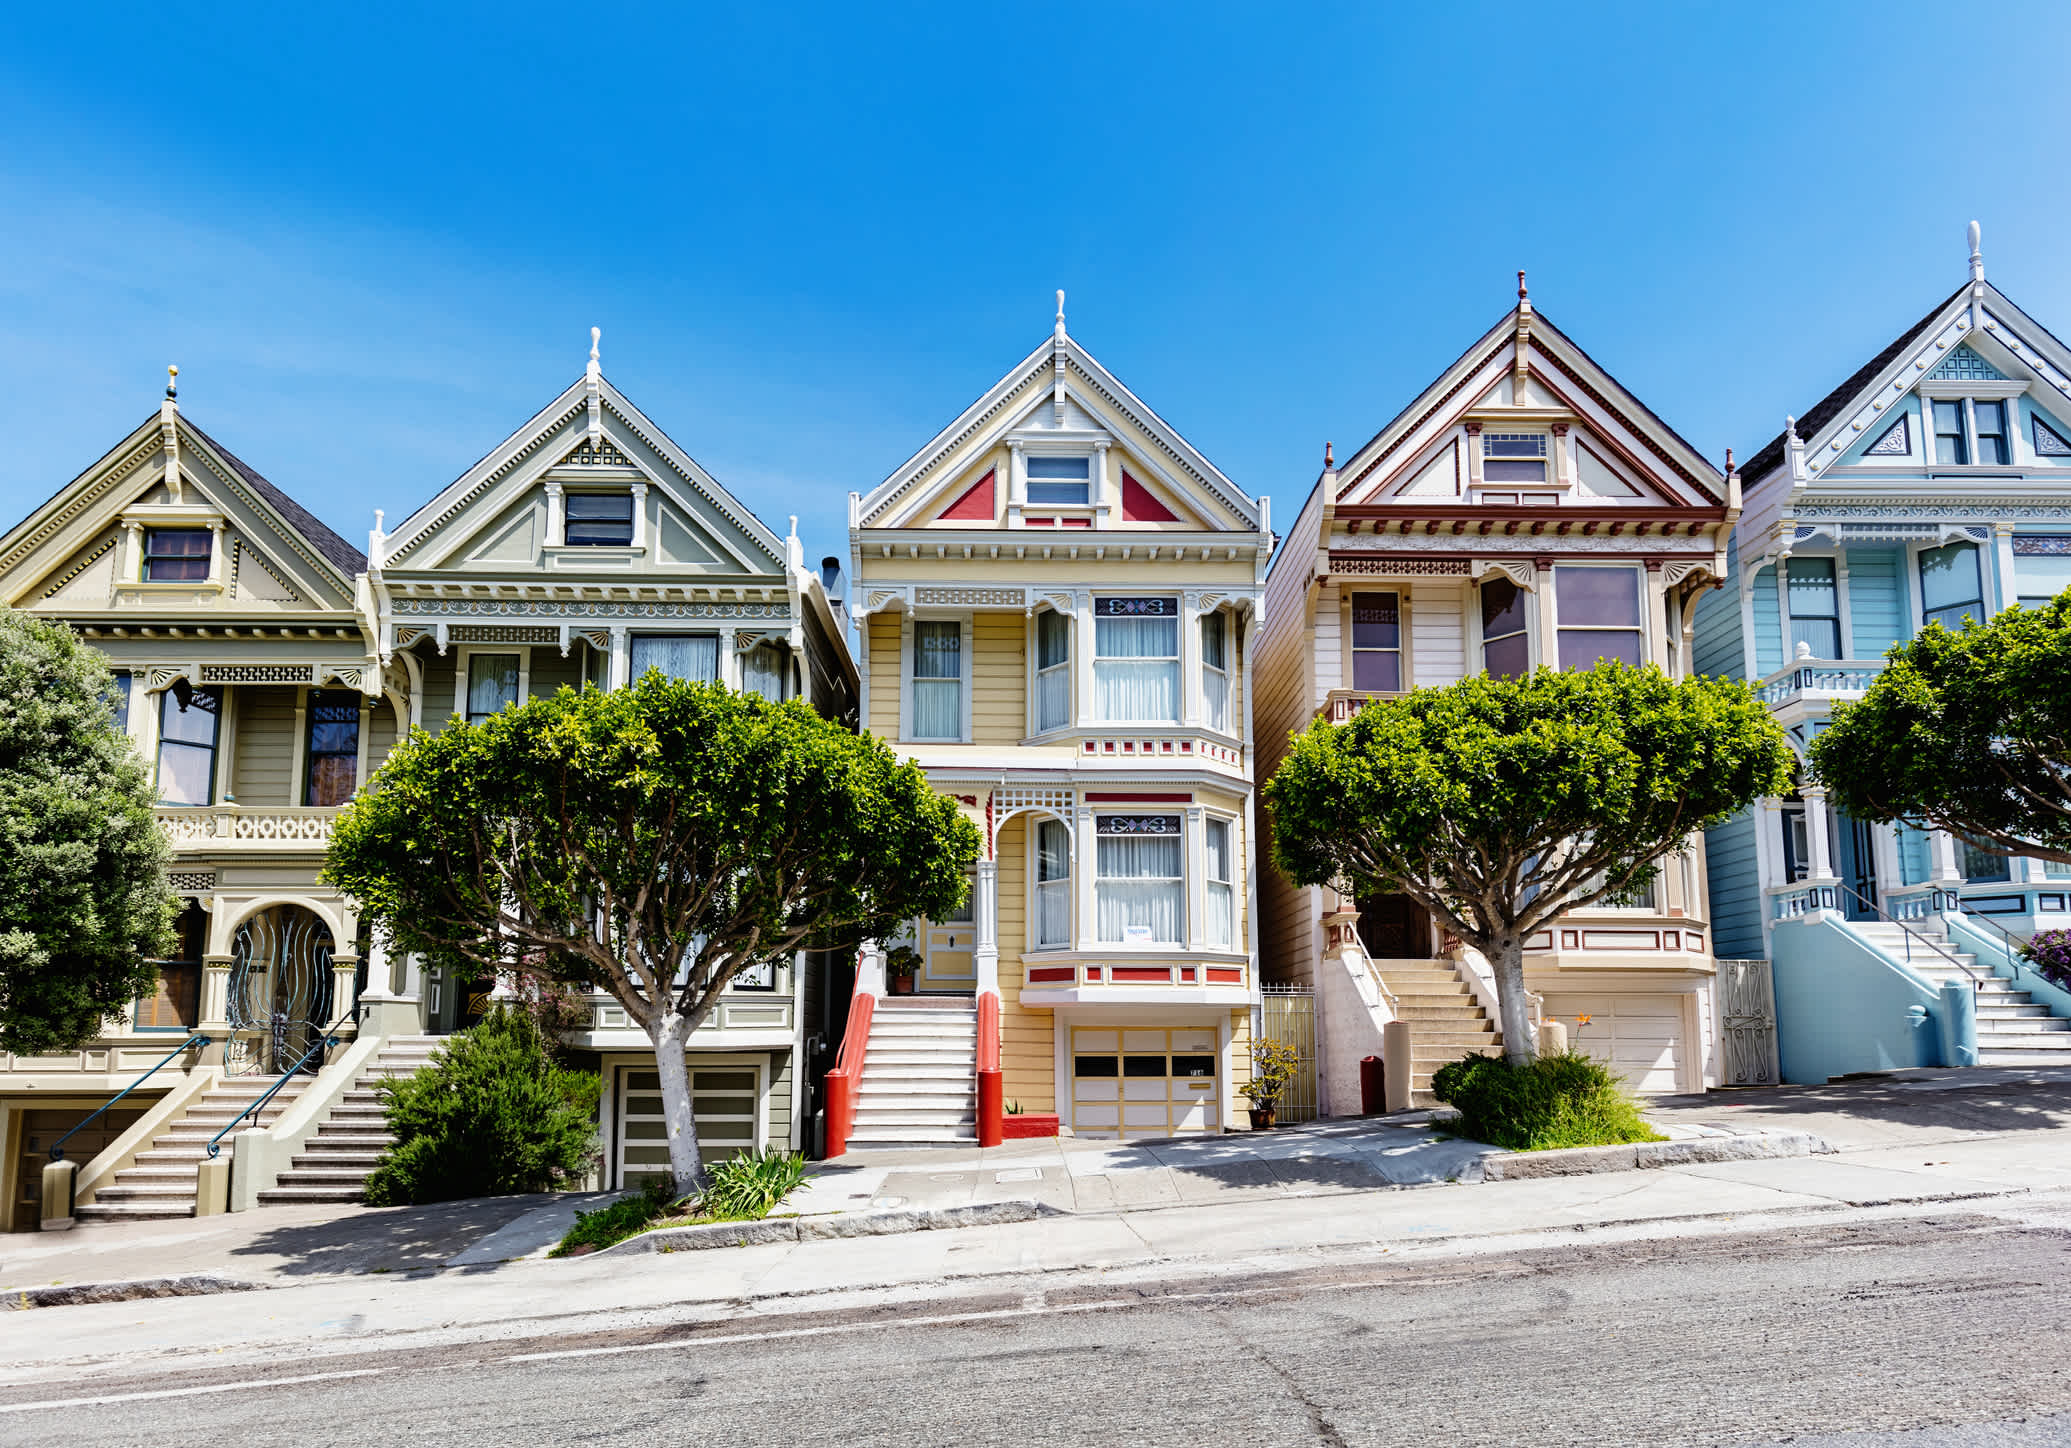 Bunte Häuser im typischen Stil der 60er in San Francisco, USA.